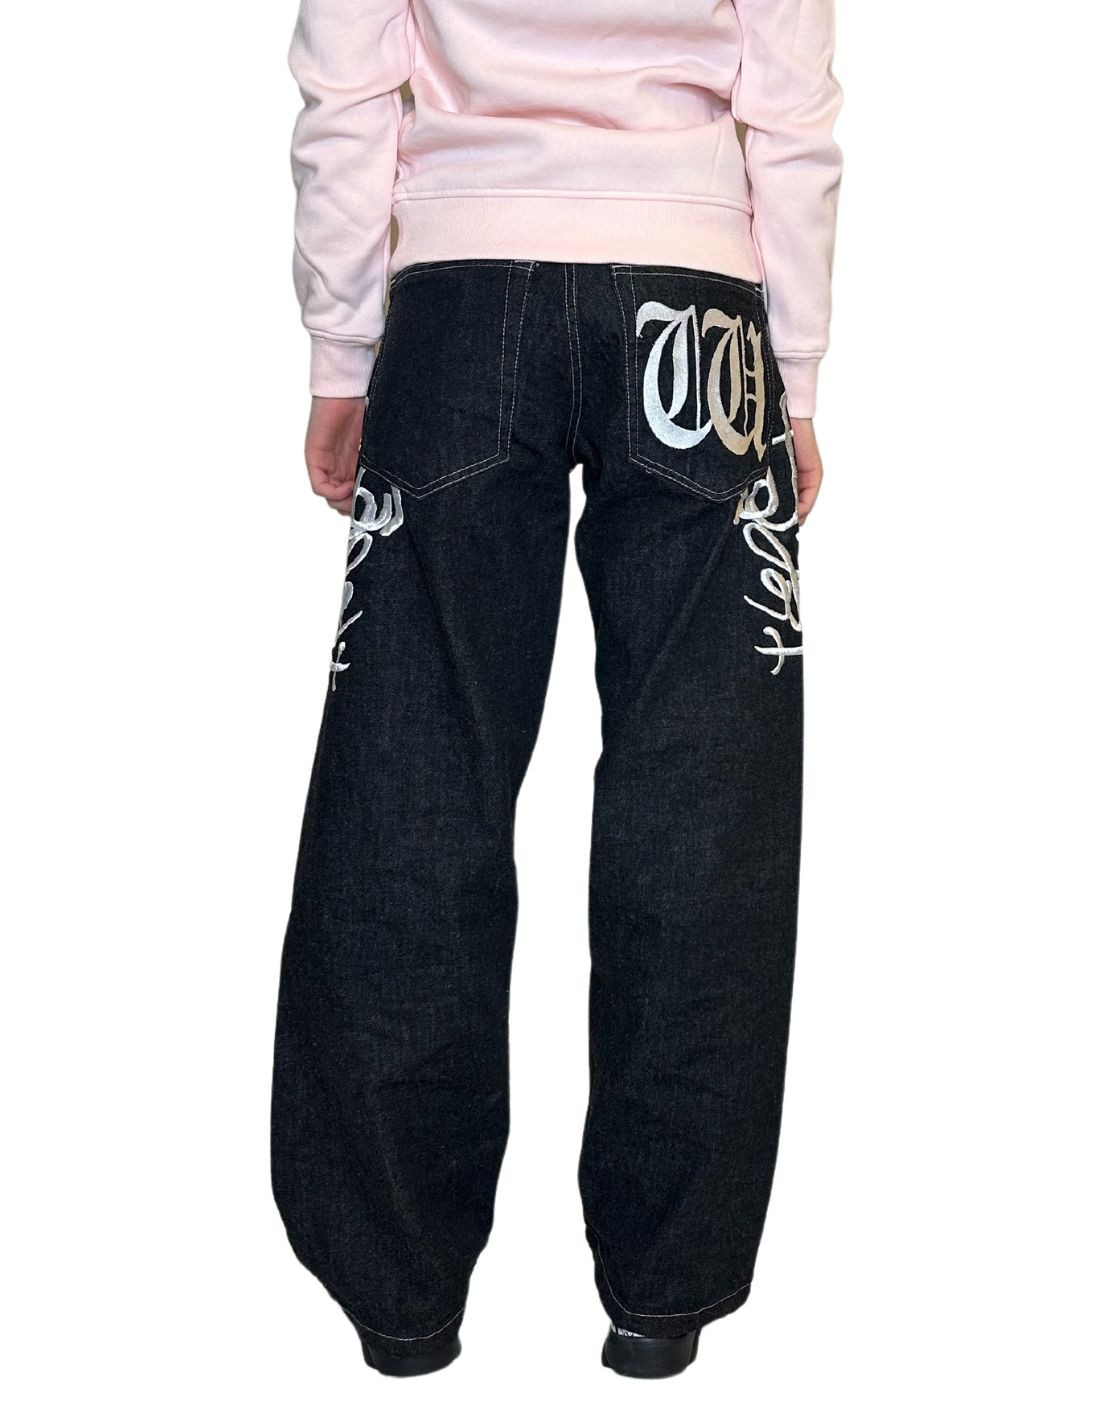 BSAT Westside Embroidered Baggy Jeans